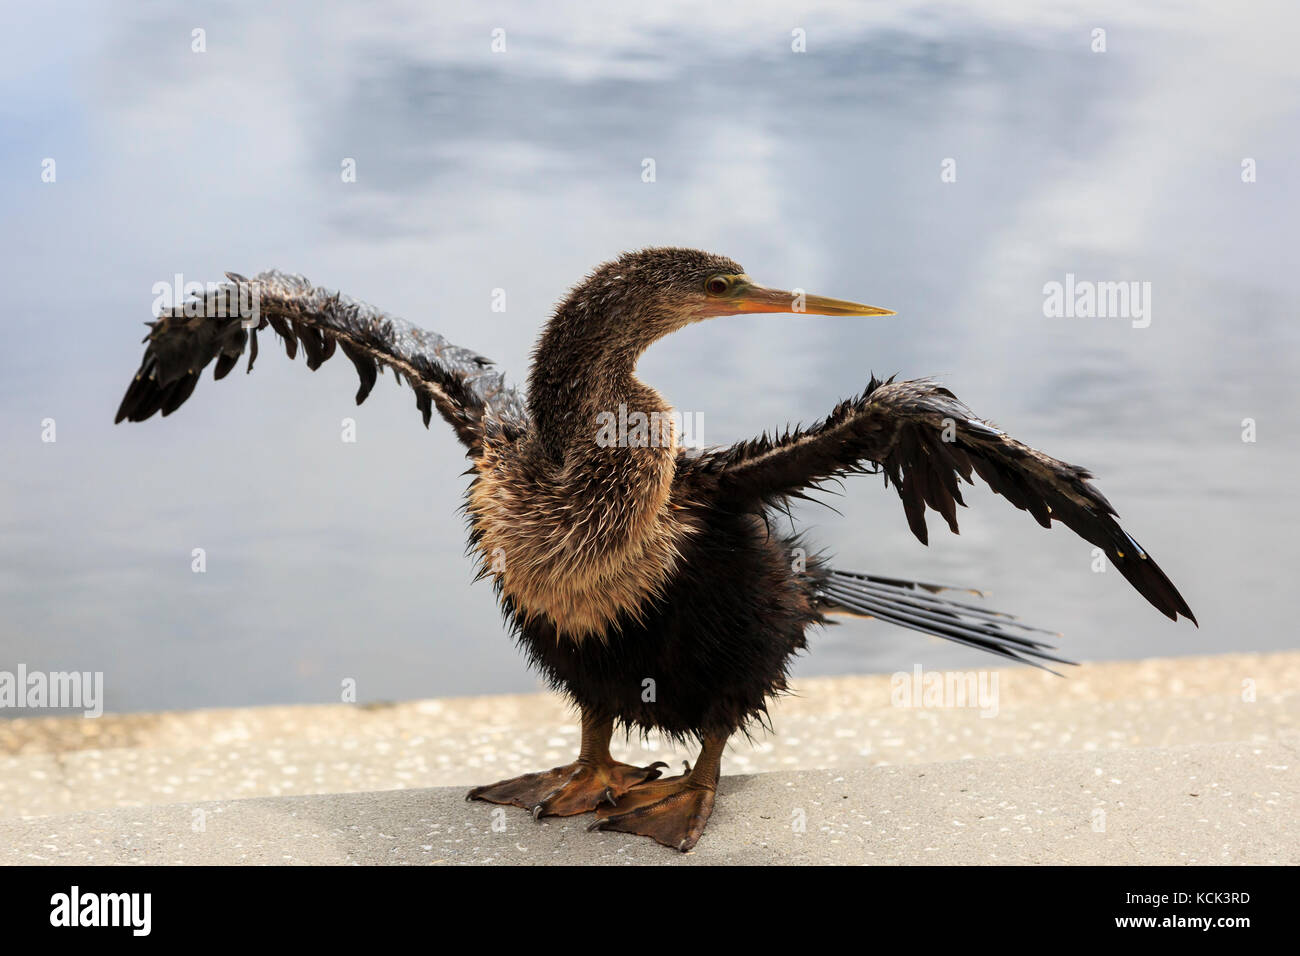 Amerikanische Anhinga Sonnen an der Seite eines Sees, Orlando, Florida, USA. Vogel ist durch verschiedene Namen wegen seiner Ähnlichkeit mit einer Türkei bei r bekannt Stockfoto